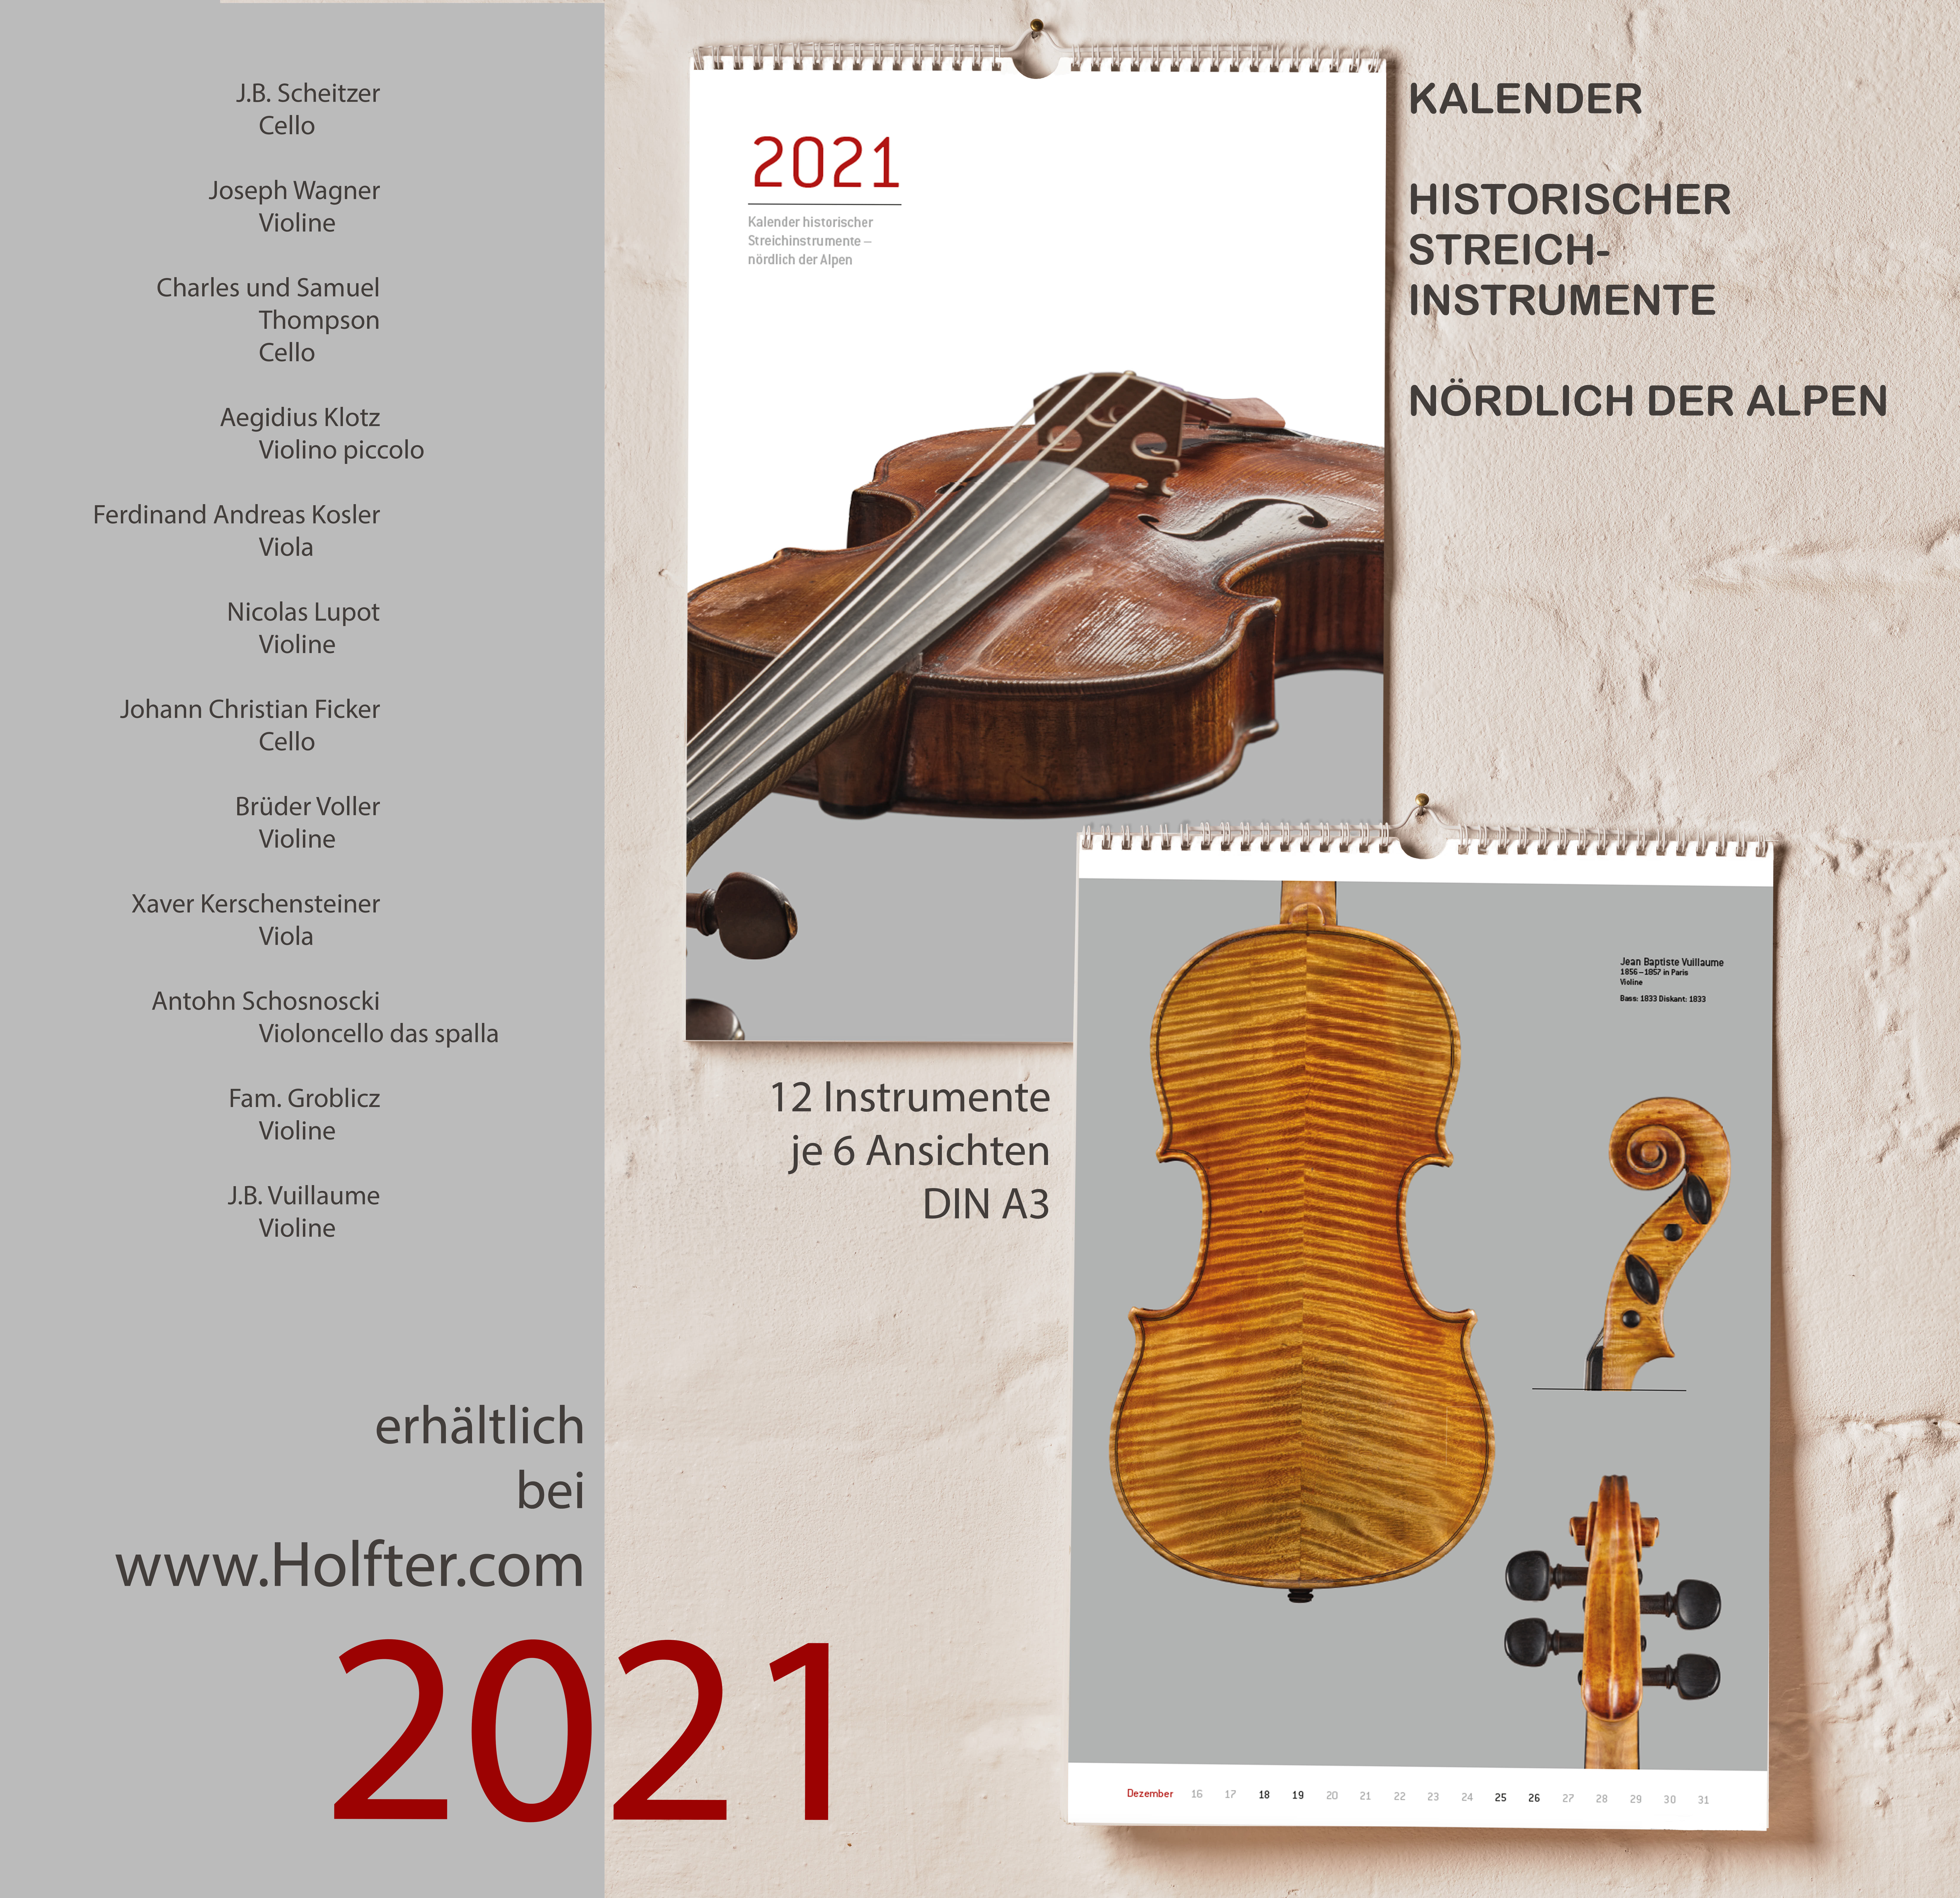 Calendar 2021 - Historische Streichinstrumente